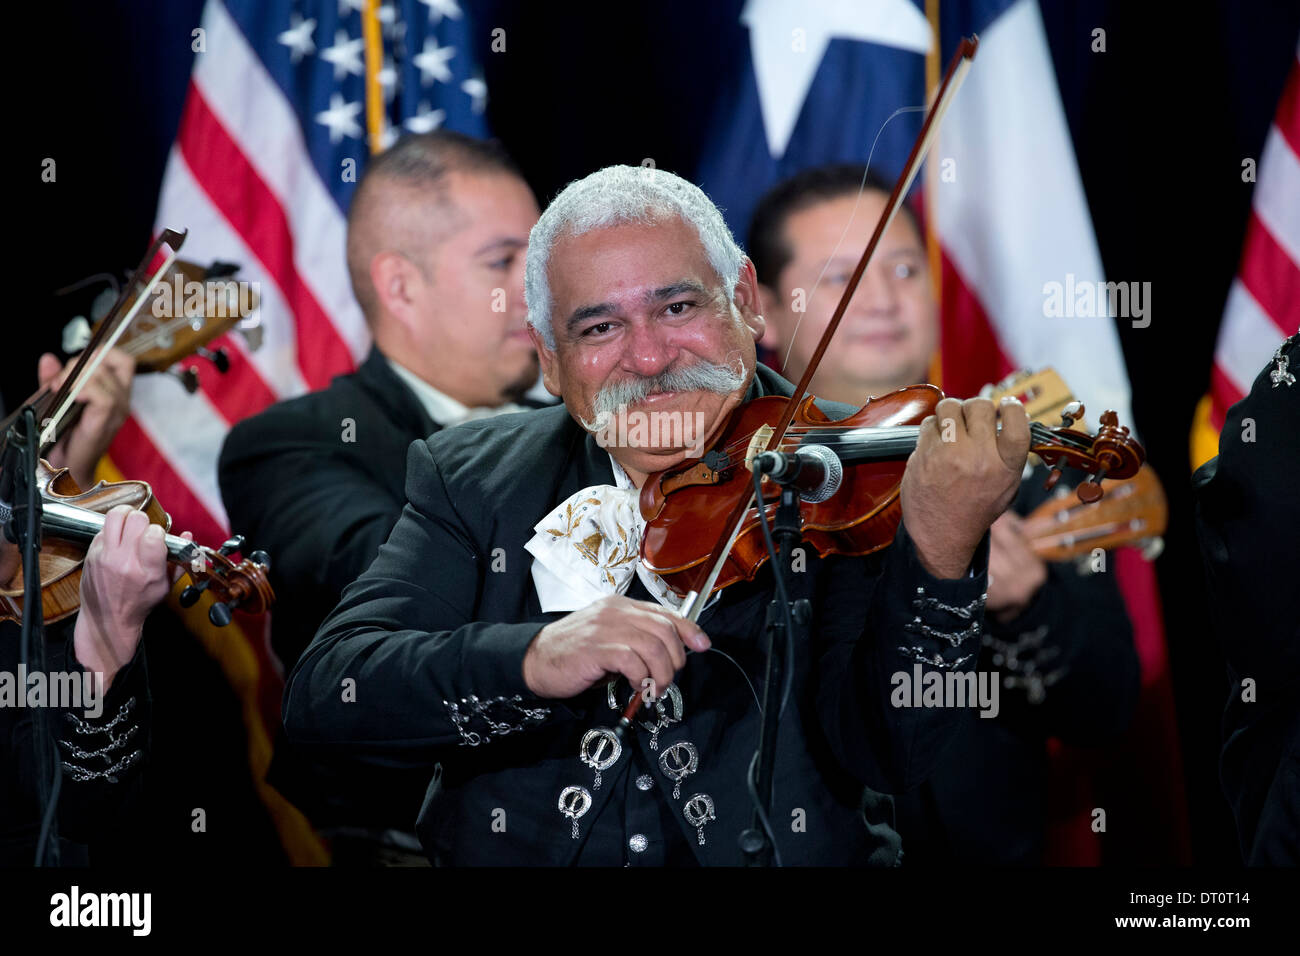 Mariachi-Band spielt auf der Bühne bei einer politischen Kundgebung in San Antonio, Texas. Stockfoto